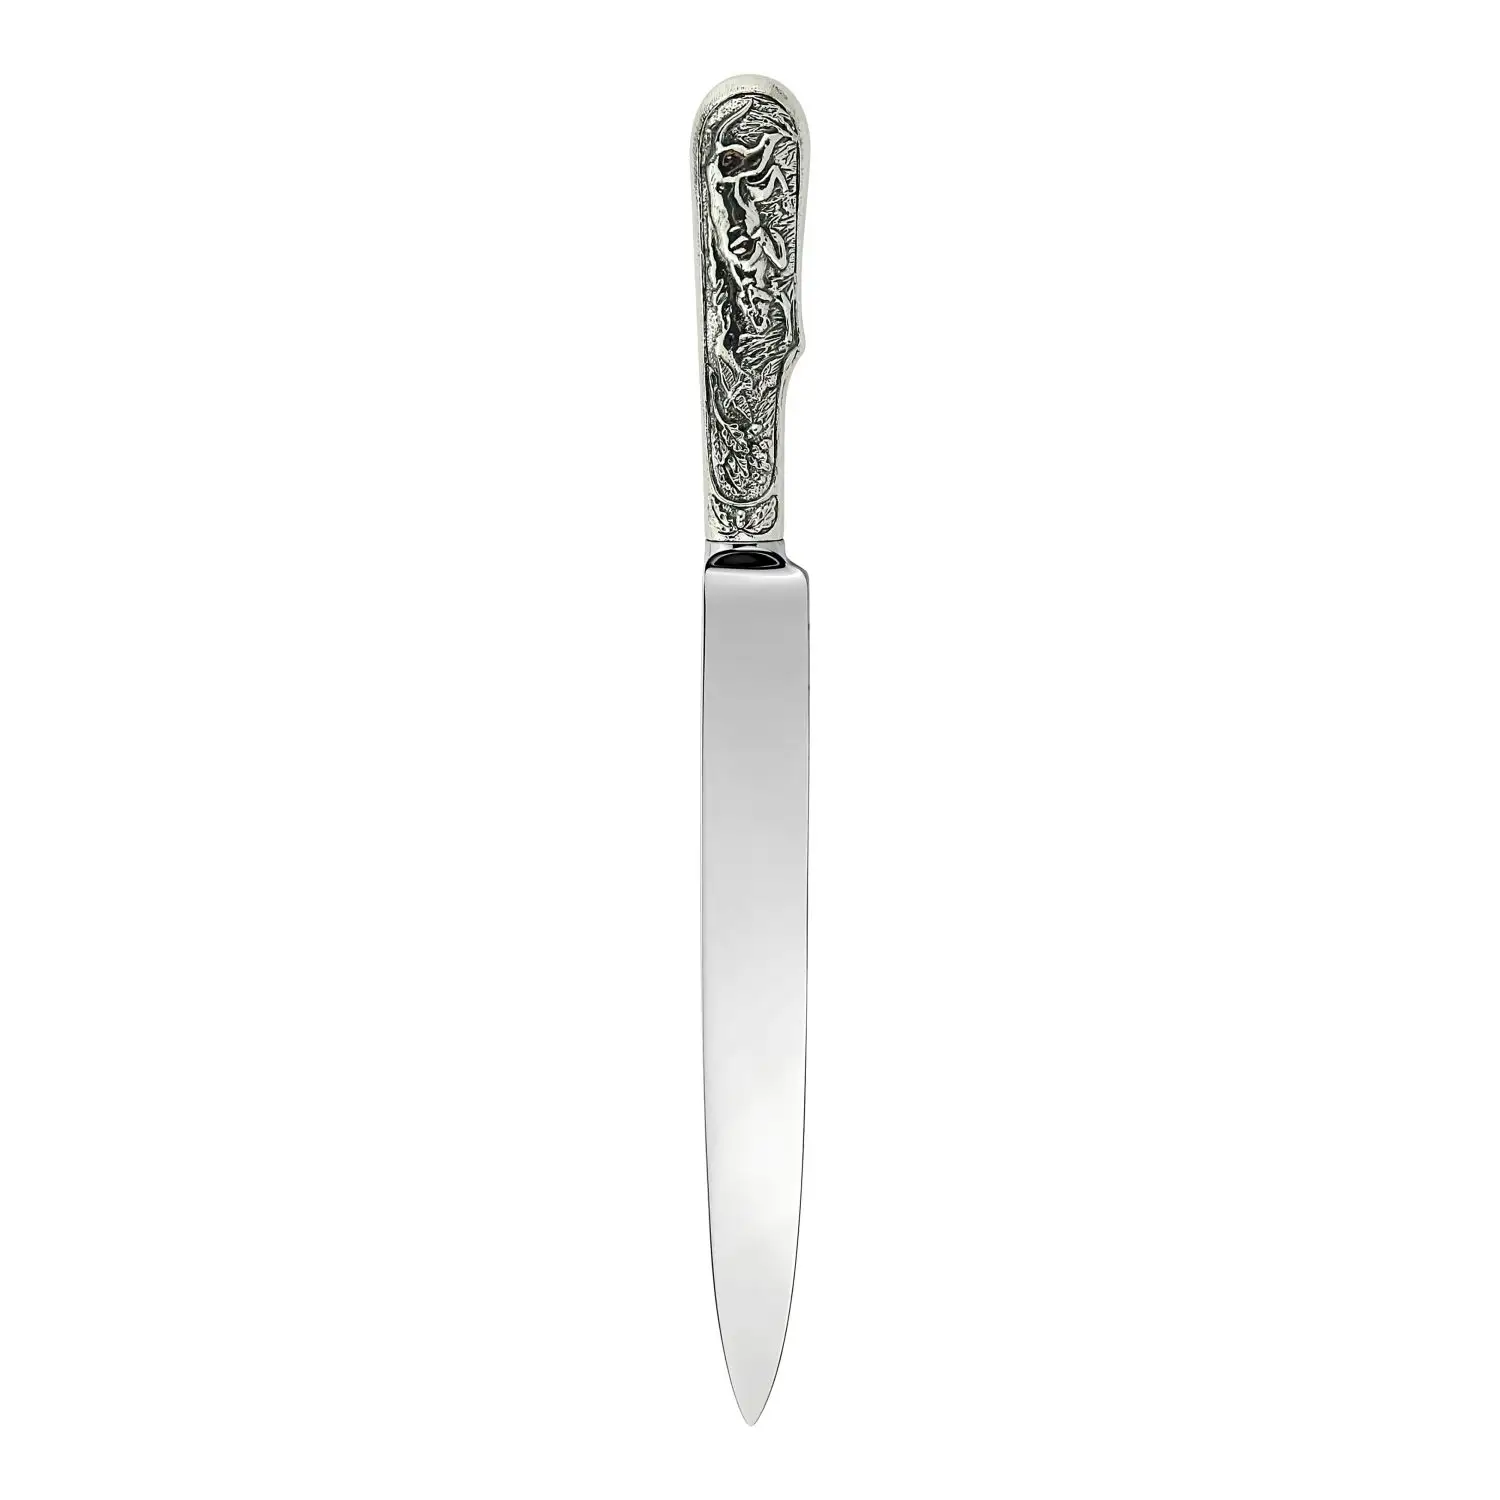 нож для мяса лось посеребренный полированный с чернением Нож для мяса Пойнтер L-220/3930 посеребренный полированный с чернением